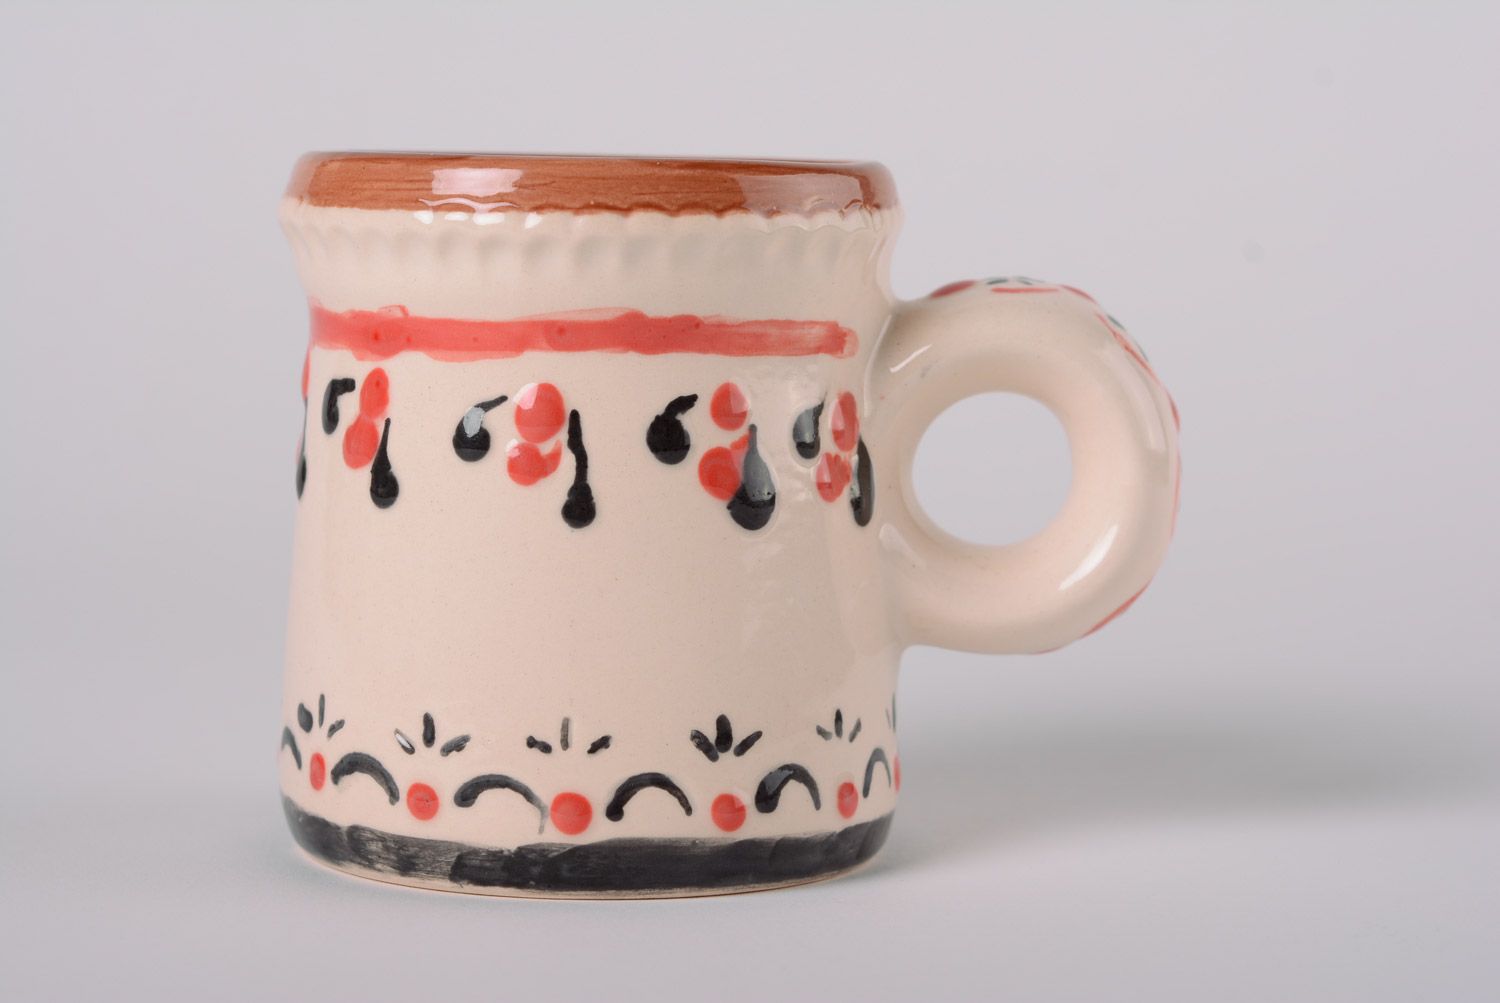 Керамическая кружка для чая и кофе майолика расписная посуда ручной работы фото 1